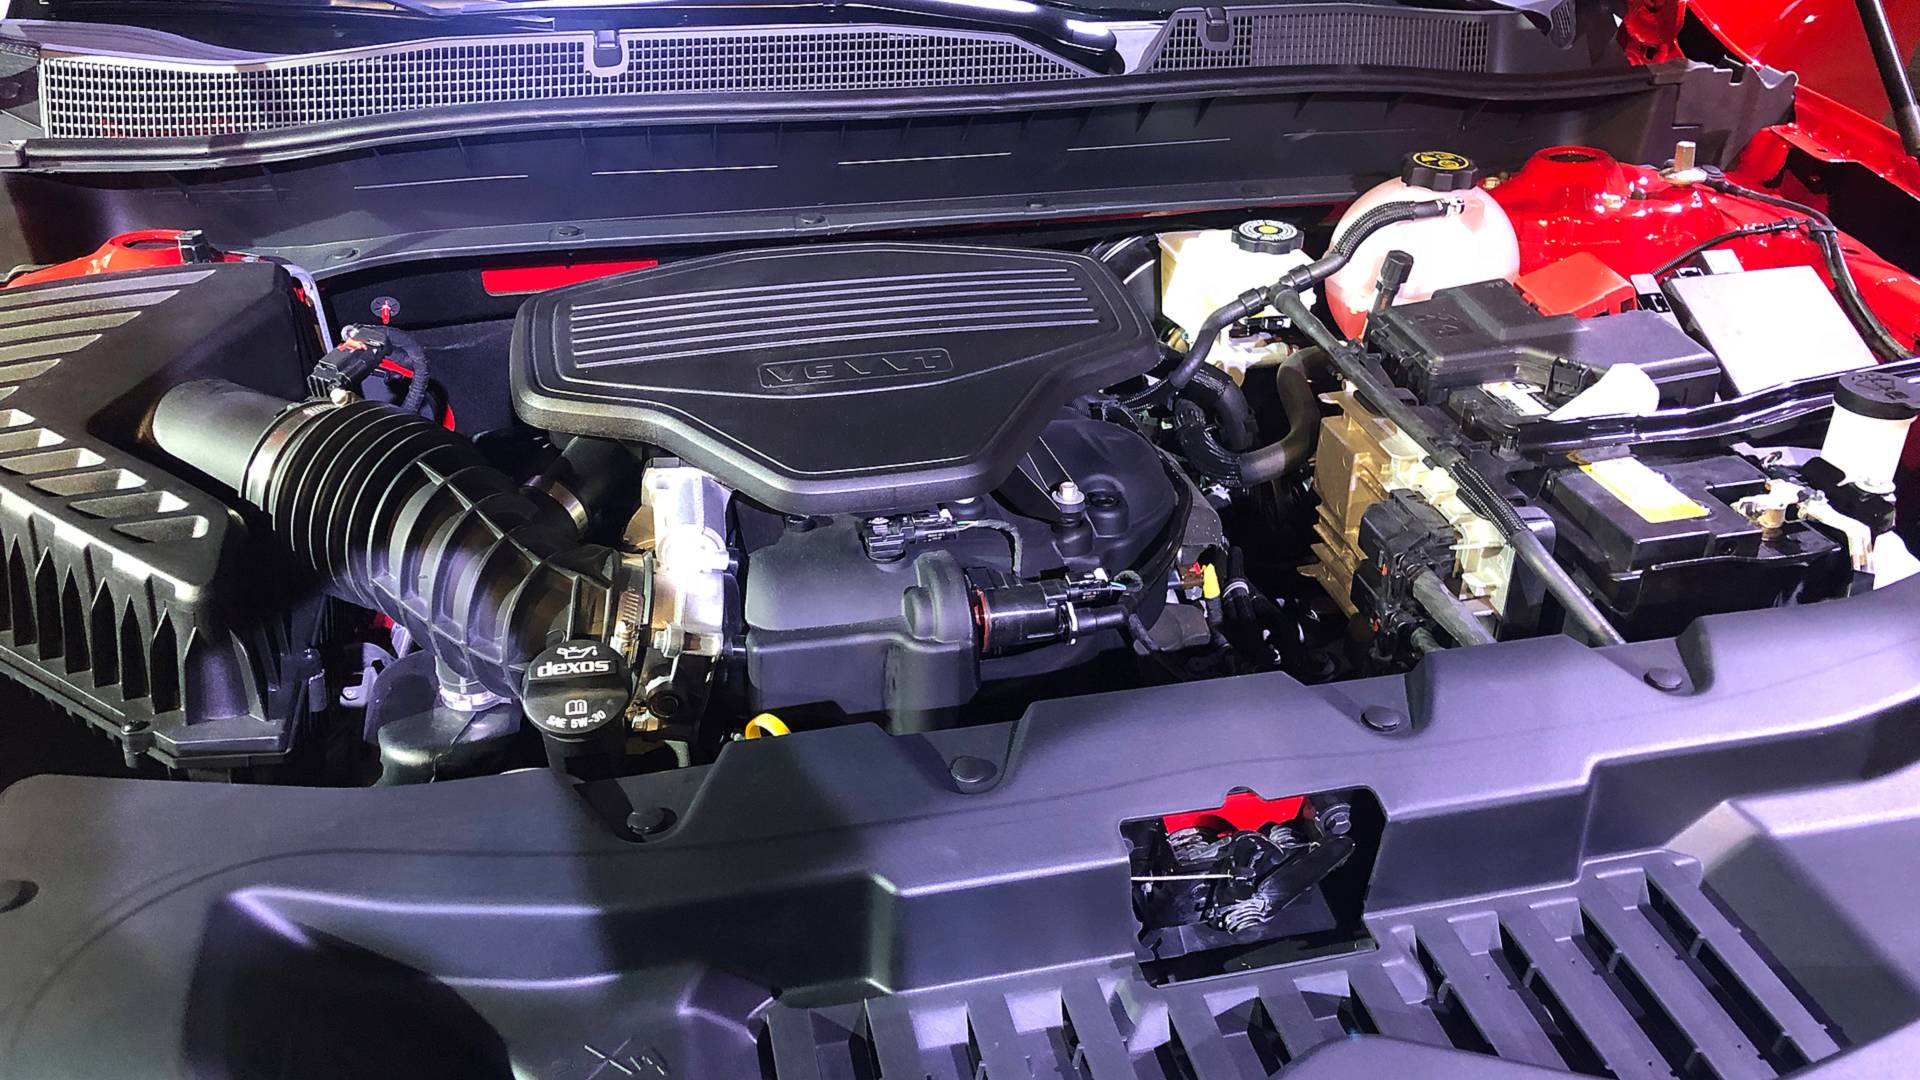 Chevrolet Blazer 2019 lộ diện: ngoại hình đậm chất thể thao, động cơ V6 300 mã lực